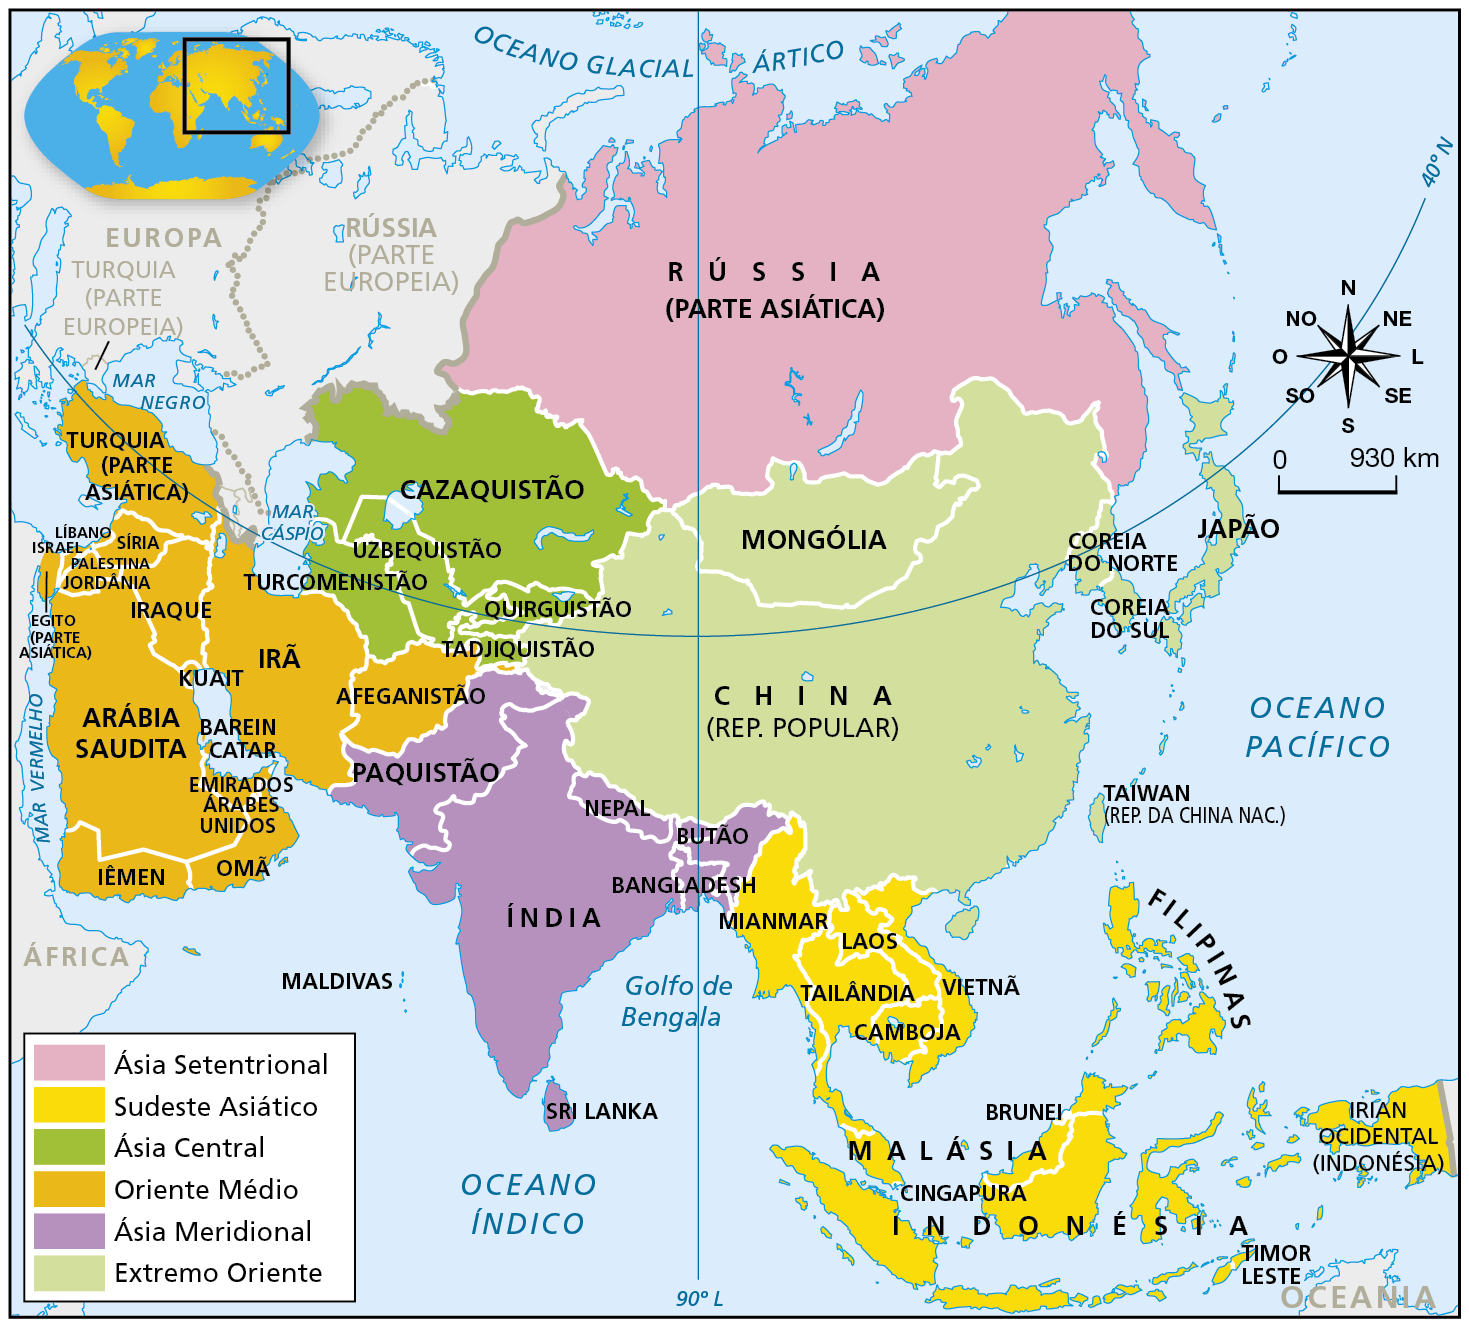 Mapa. Ásia: regionalização. Mapa representando a divisão do continente asiático em regiões e os países que as compõem. Ásia Setentrional, em rosa-claro: Rússia (parte asiática). Sudeste Asiático, em amarelo: Mianmar, Laos, Tailândia, Camboja, Vietnã, Malásia, Cingapura, Brunei, Indonésia, Filipinas e Timor Leste. Ásia Central, em verde-escuro: Cazaquistão, Uzbequistão, Turcomenistão, Quirguistão, Tadjiquistão. Oriente Médio, em laranja: Afeganistão, Irã, Iraque, Arábia Saudita, Kuait, Barein, Catar, Iêmen, Omã, Emirados Árabes Unidos, Egito (parte asiática), Palestina, Israel, Jordânia, Síria, Líbano e Turquia (parte asiática). Ásia Meridional, em lilás: Paquistão, Índia, Bangladesh, Butão, Nepal, Sri Lanka e Maldivas. Extremo Oriente, em verde-claro: Mongólia, China (República Popular), Coreia do Norte, Coreia do Sul, Taiwan (República da China Nacional) e Japão. À direita, rosa dos ventos e escala de 0 a 930 quilômetros.